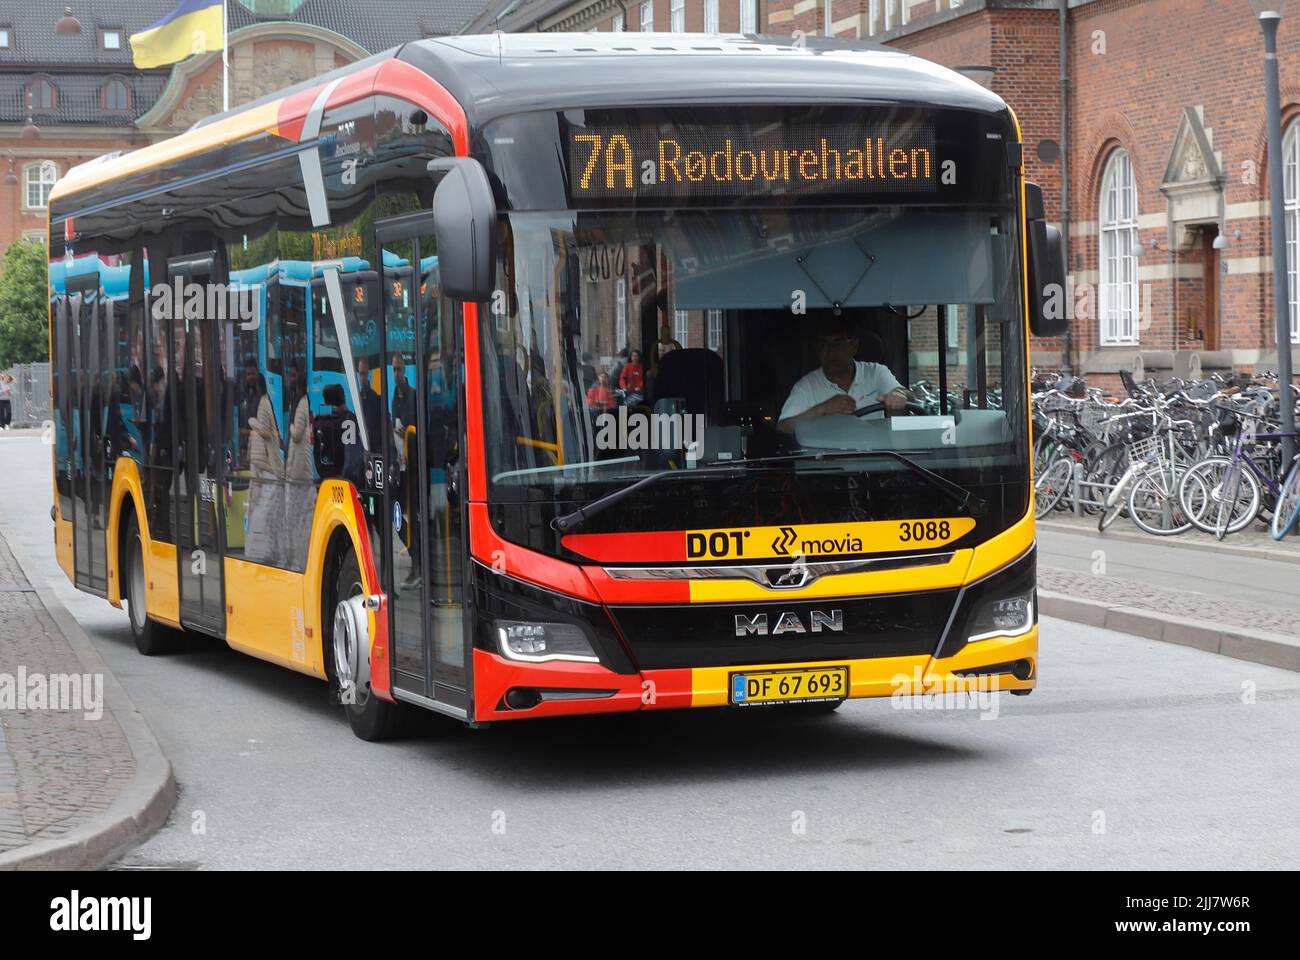 Copenhague, Dinamarca - 14 de junio de 2022: Vista frontal de un autobús urbano en servicio en la línea 7A fuera de la estación central. Foto de stock